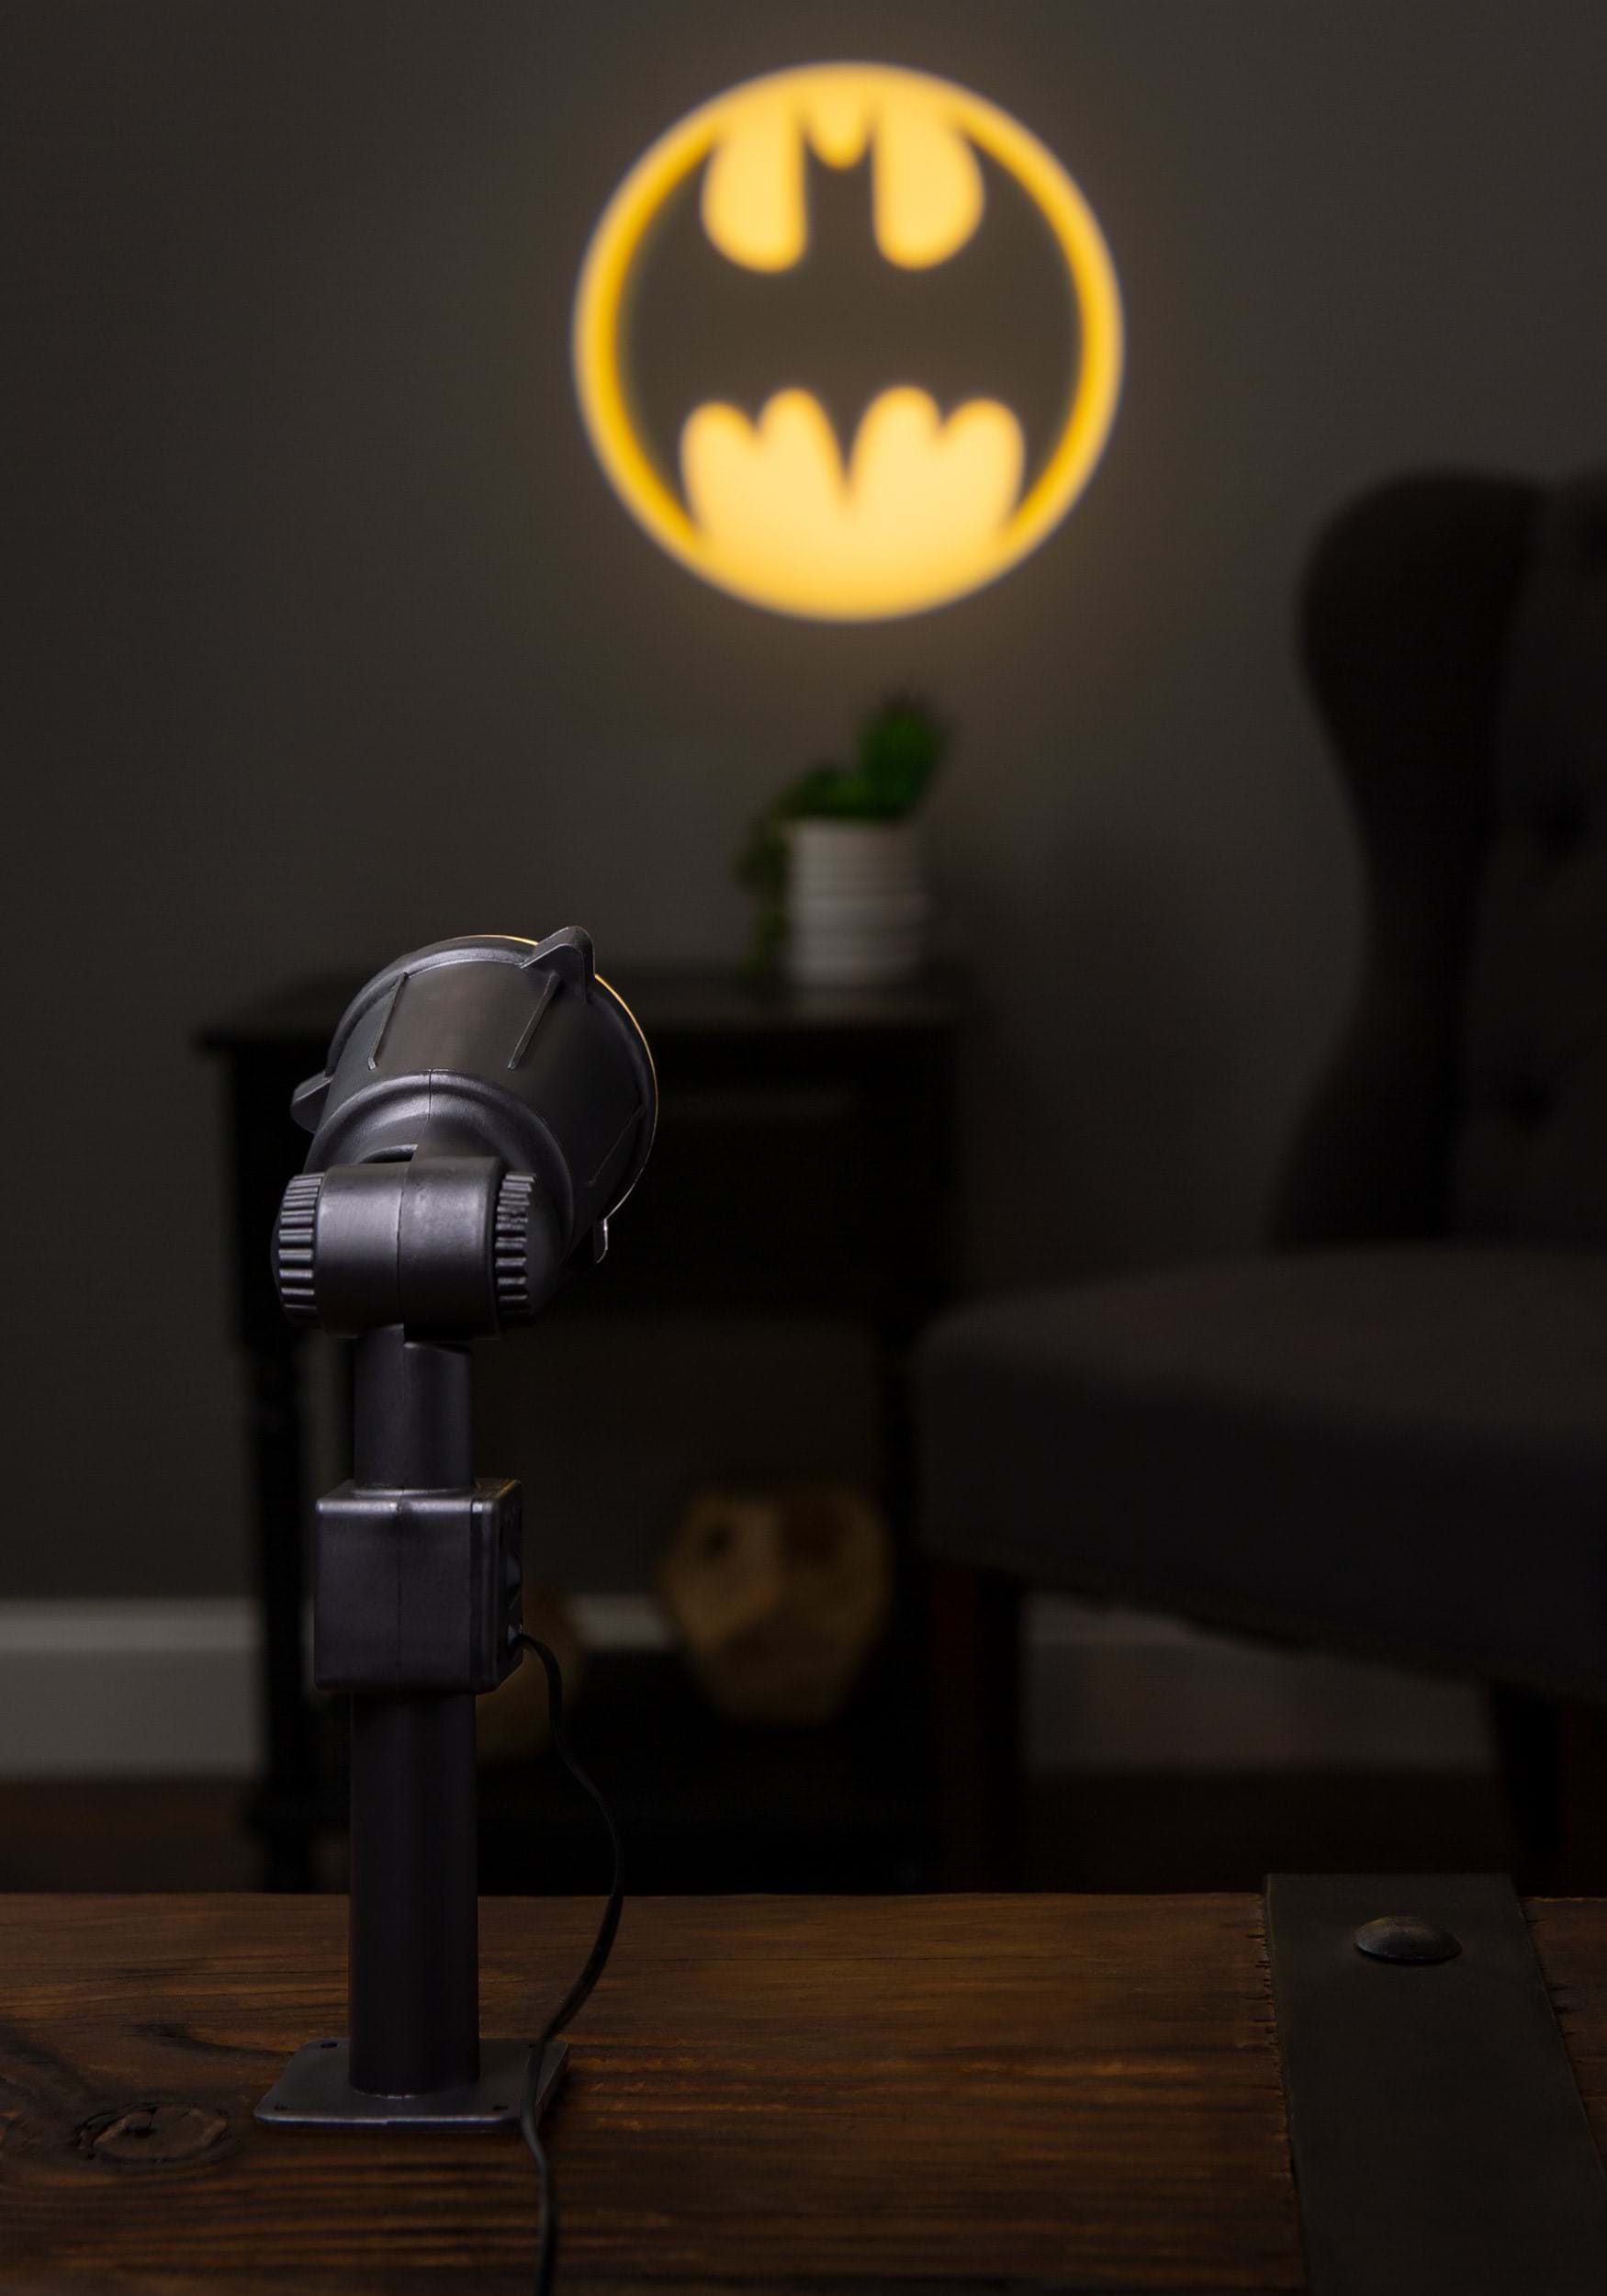 14″ Batman Bat Signal Projector